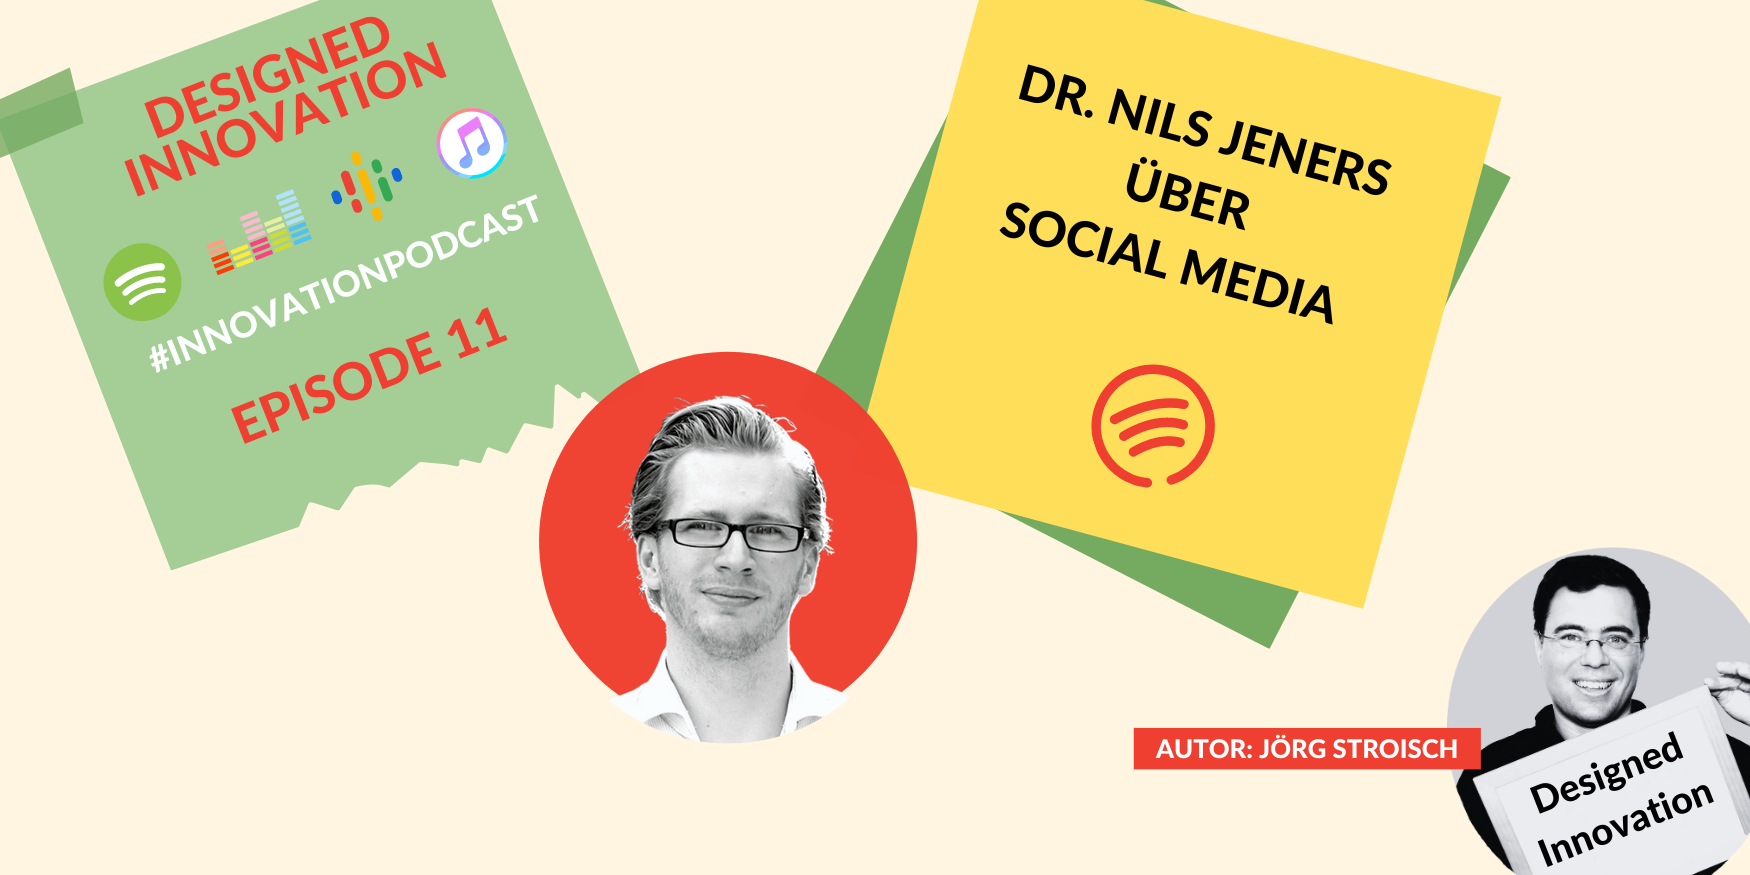 Dr. Nils Jeners, Innovationscoach, beschreibt, wie er Social Media nutzt. Eine neue Folge meines Podcasts.